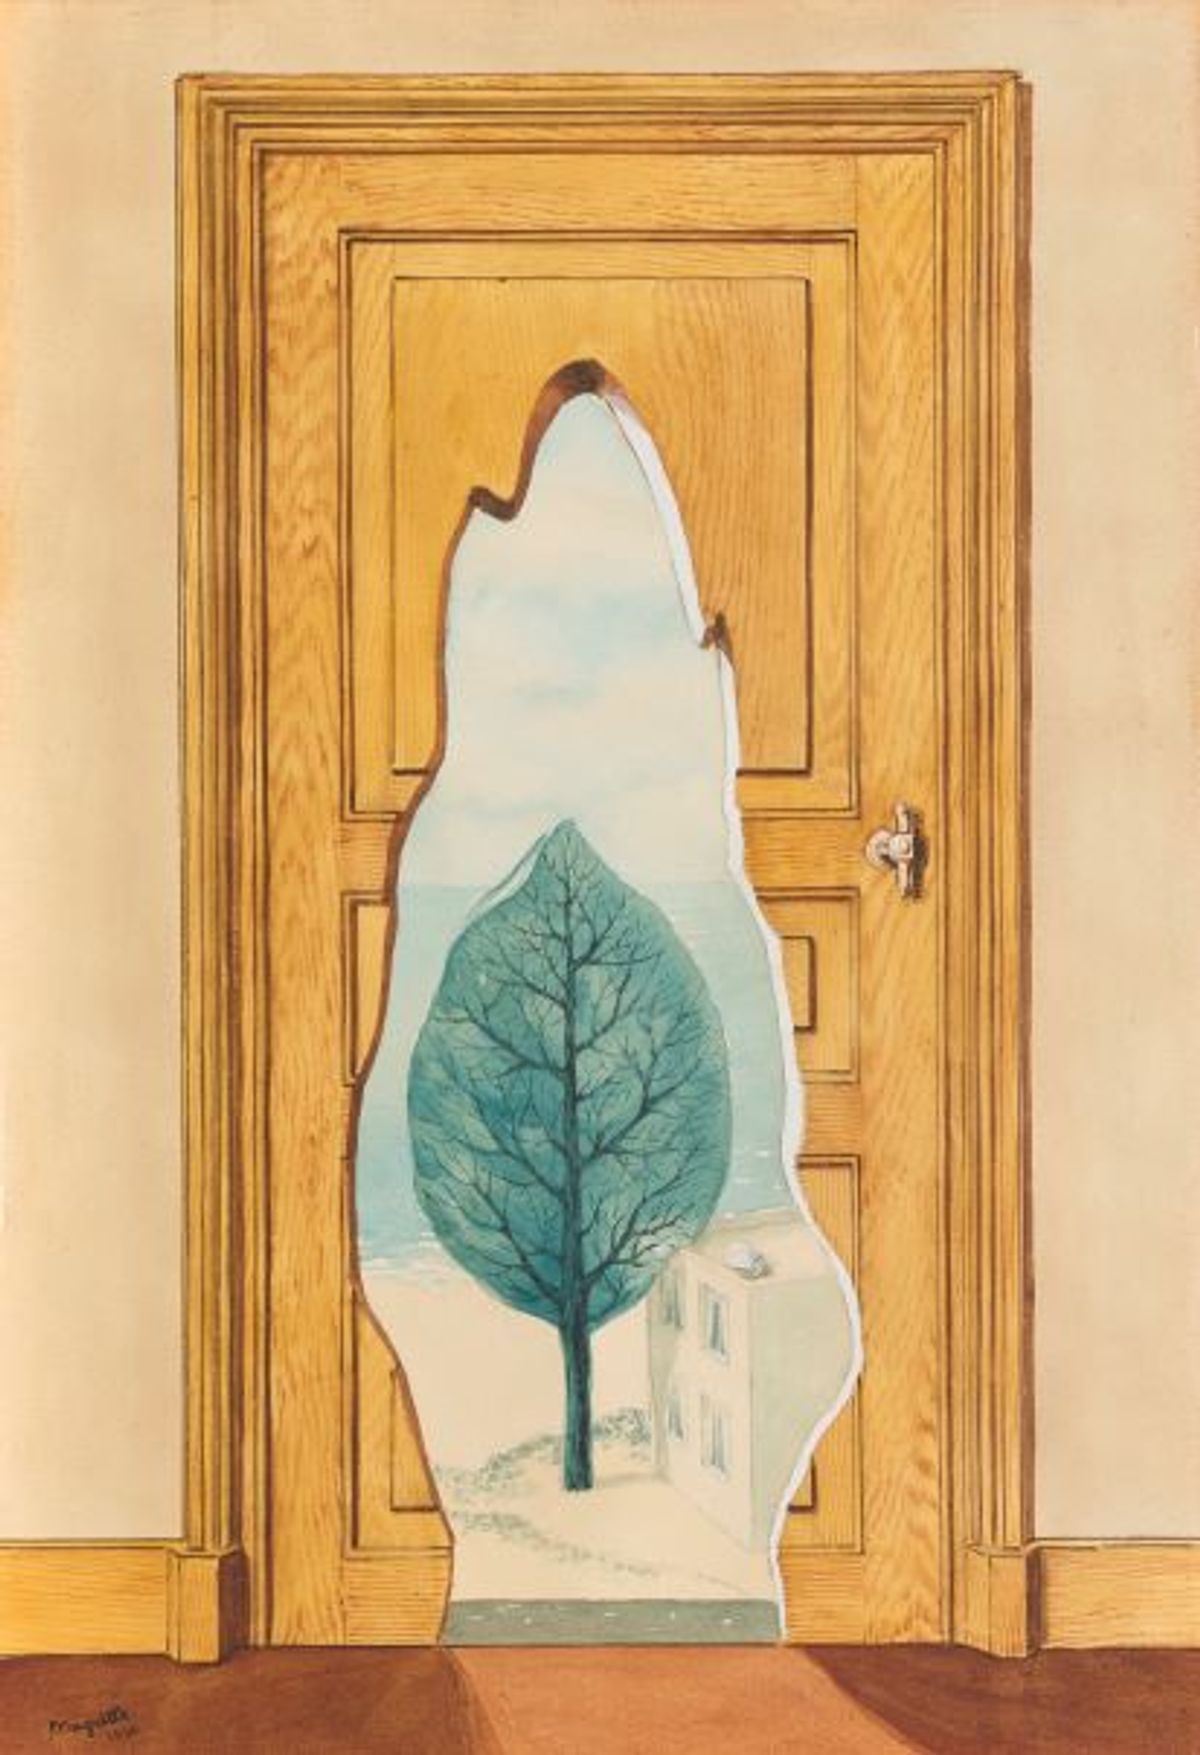 René Magritte, La Perspective amoureuse, 1936, huile sur toile. © Sotheby’s